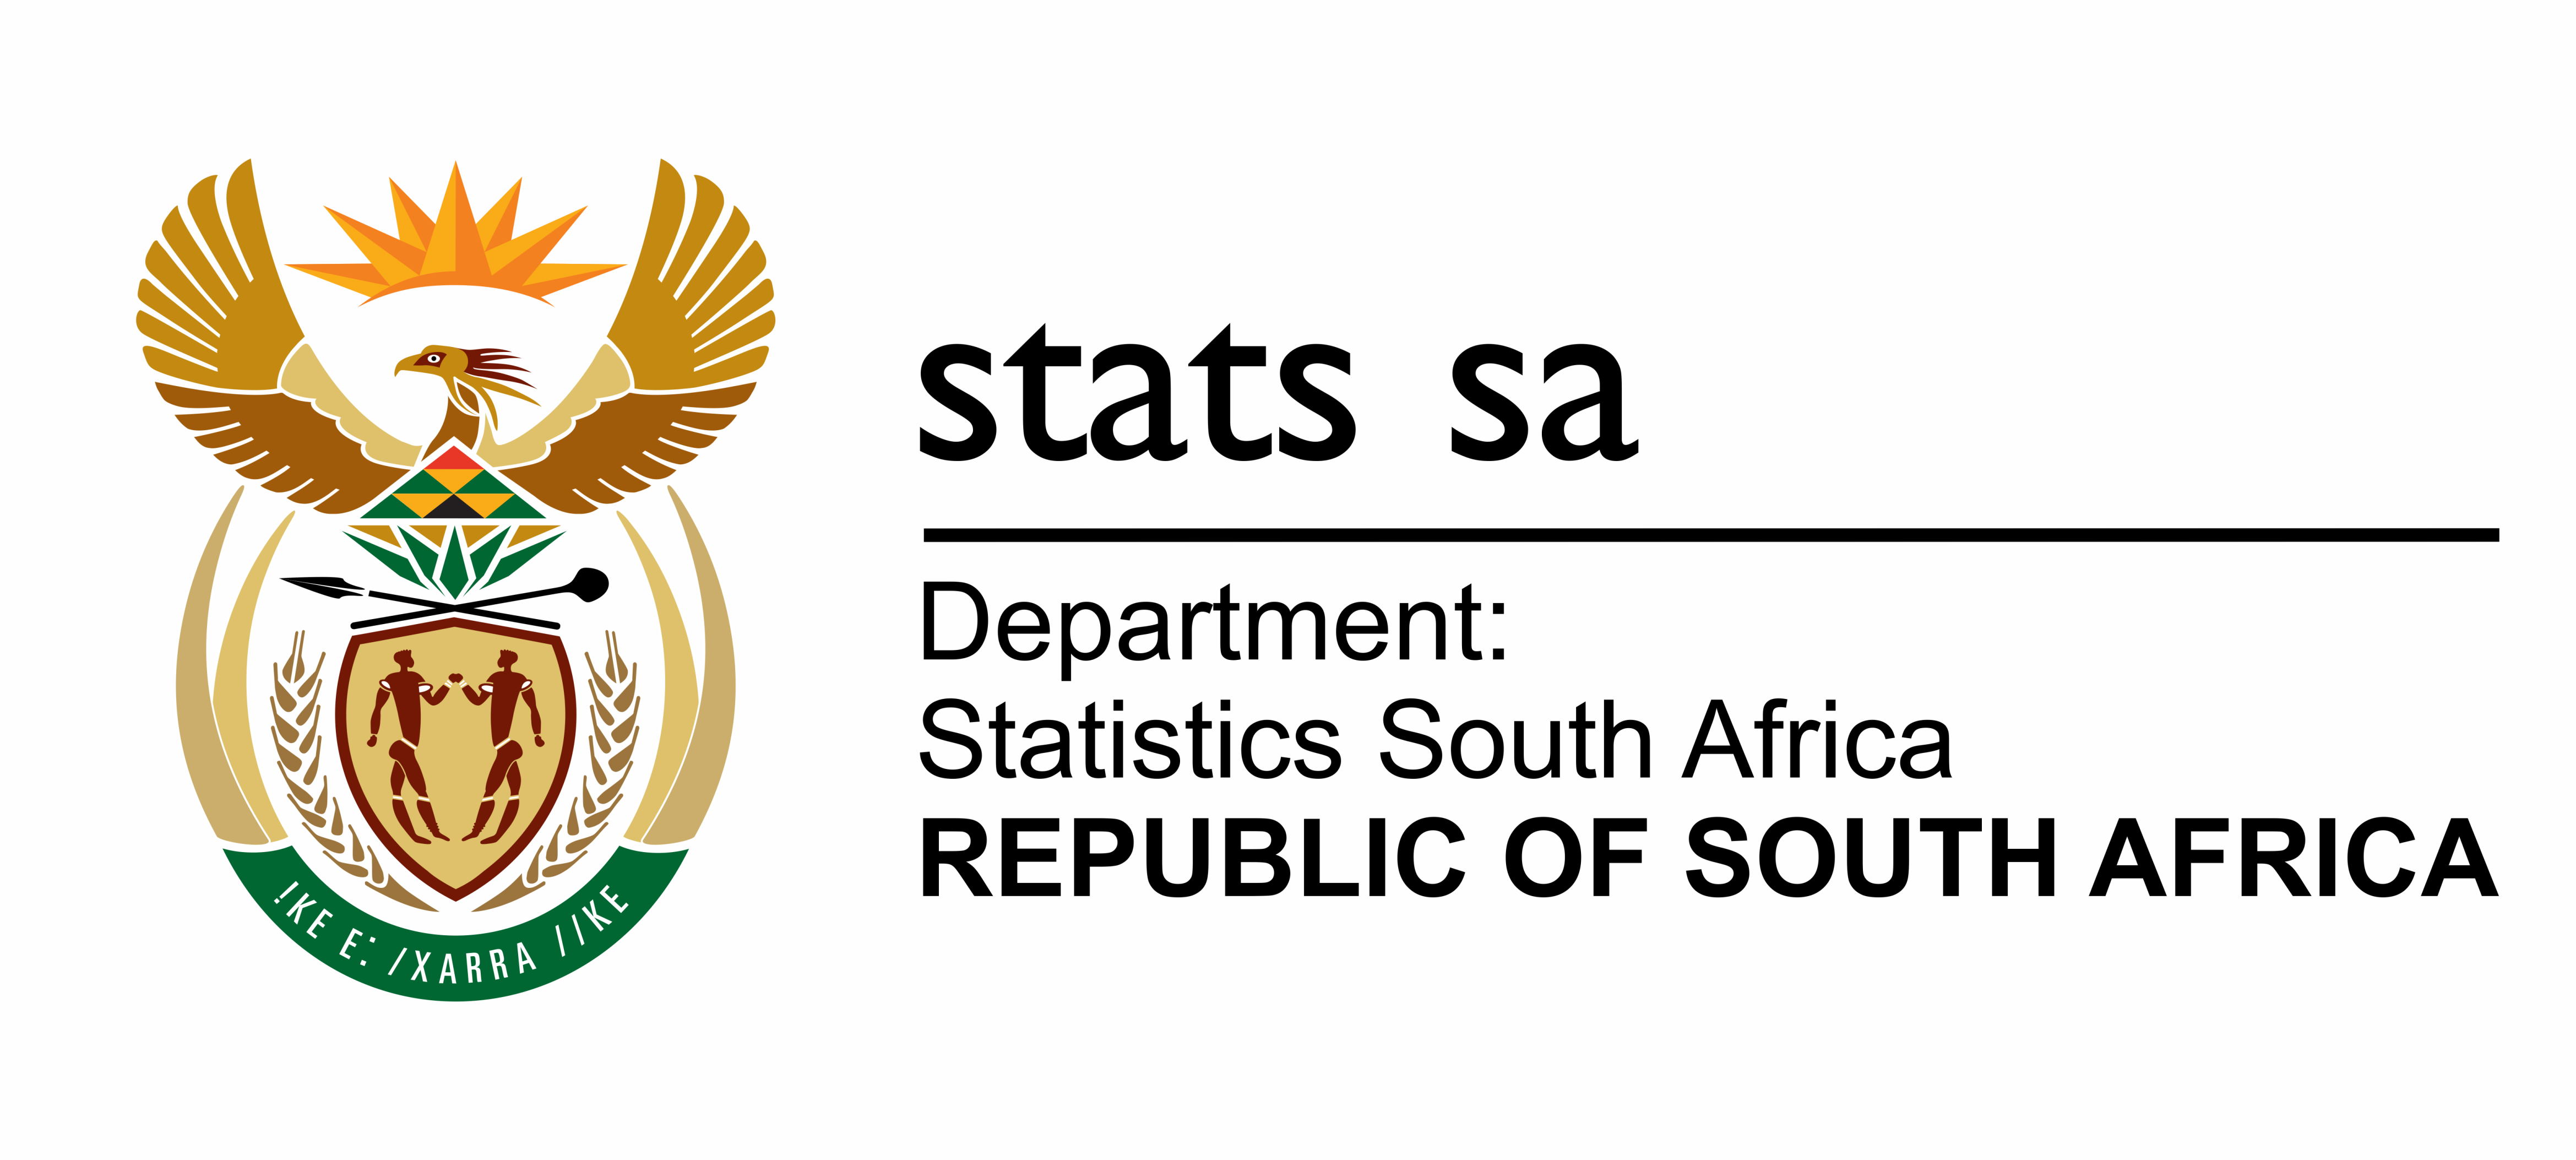 Statistics Council